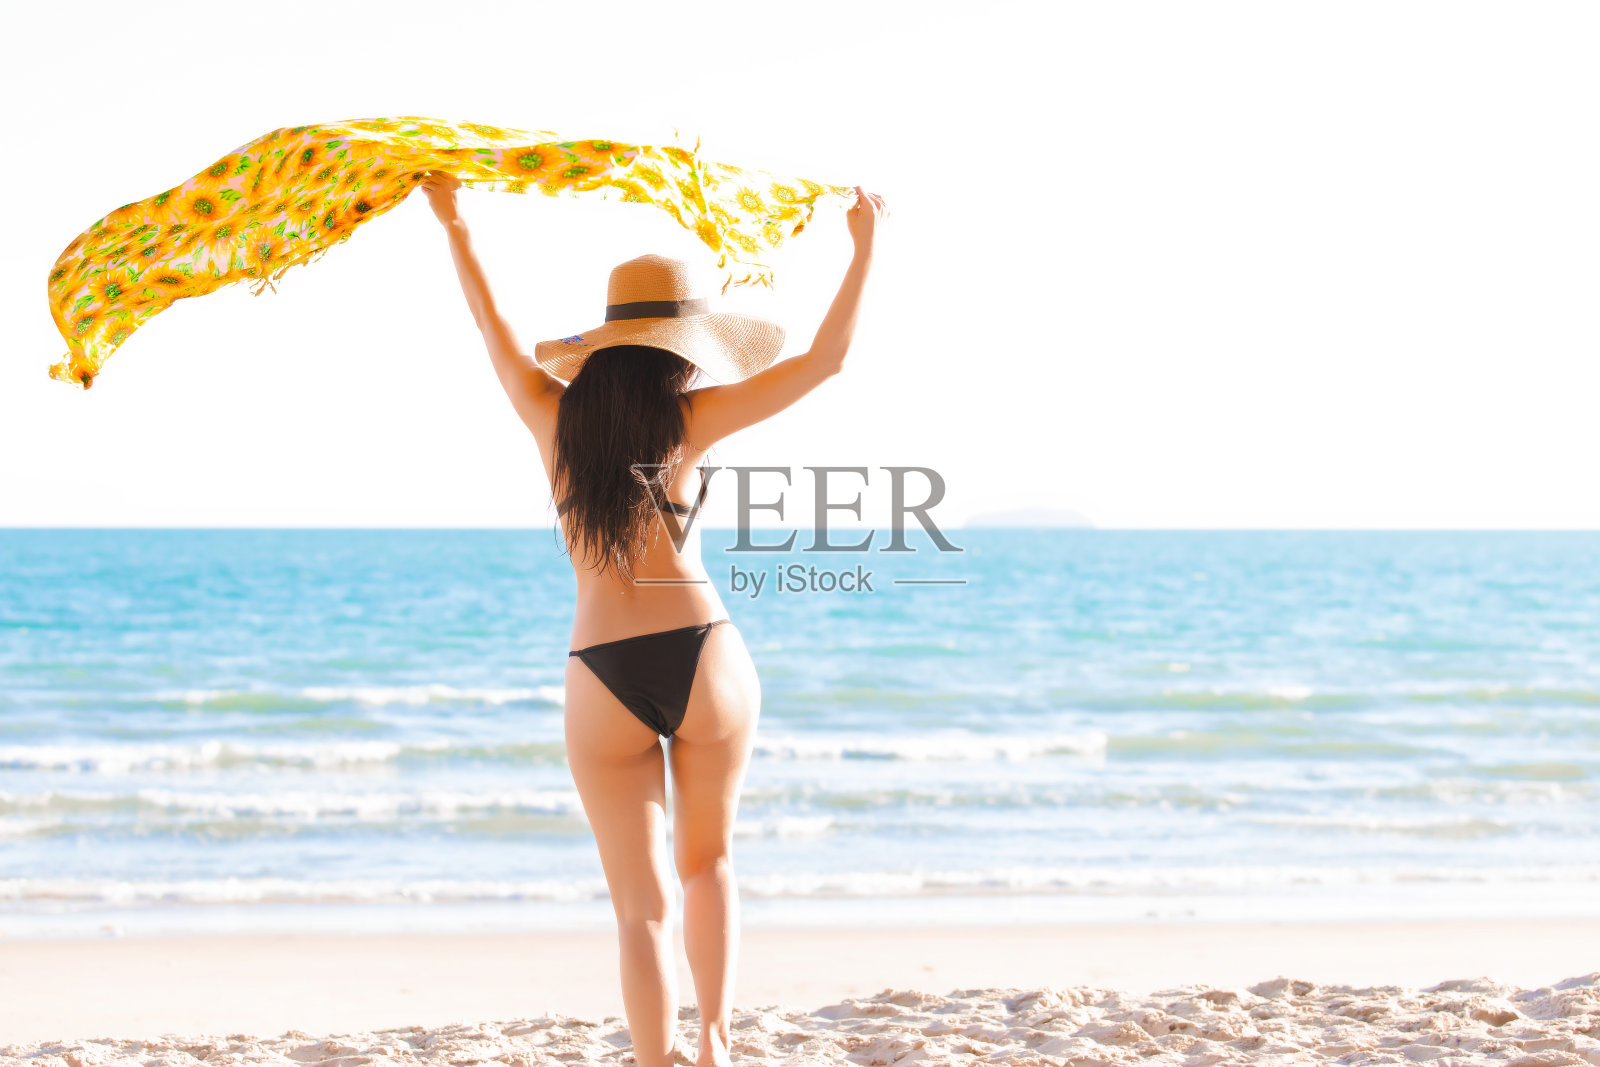 夏日里，热带岛屿的海滩上，穿着黑色比基尼的美女站在热带海滩上，手拿黄色围巾，戴着太阳帽。照片摄影图片